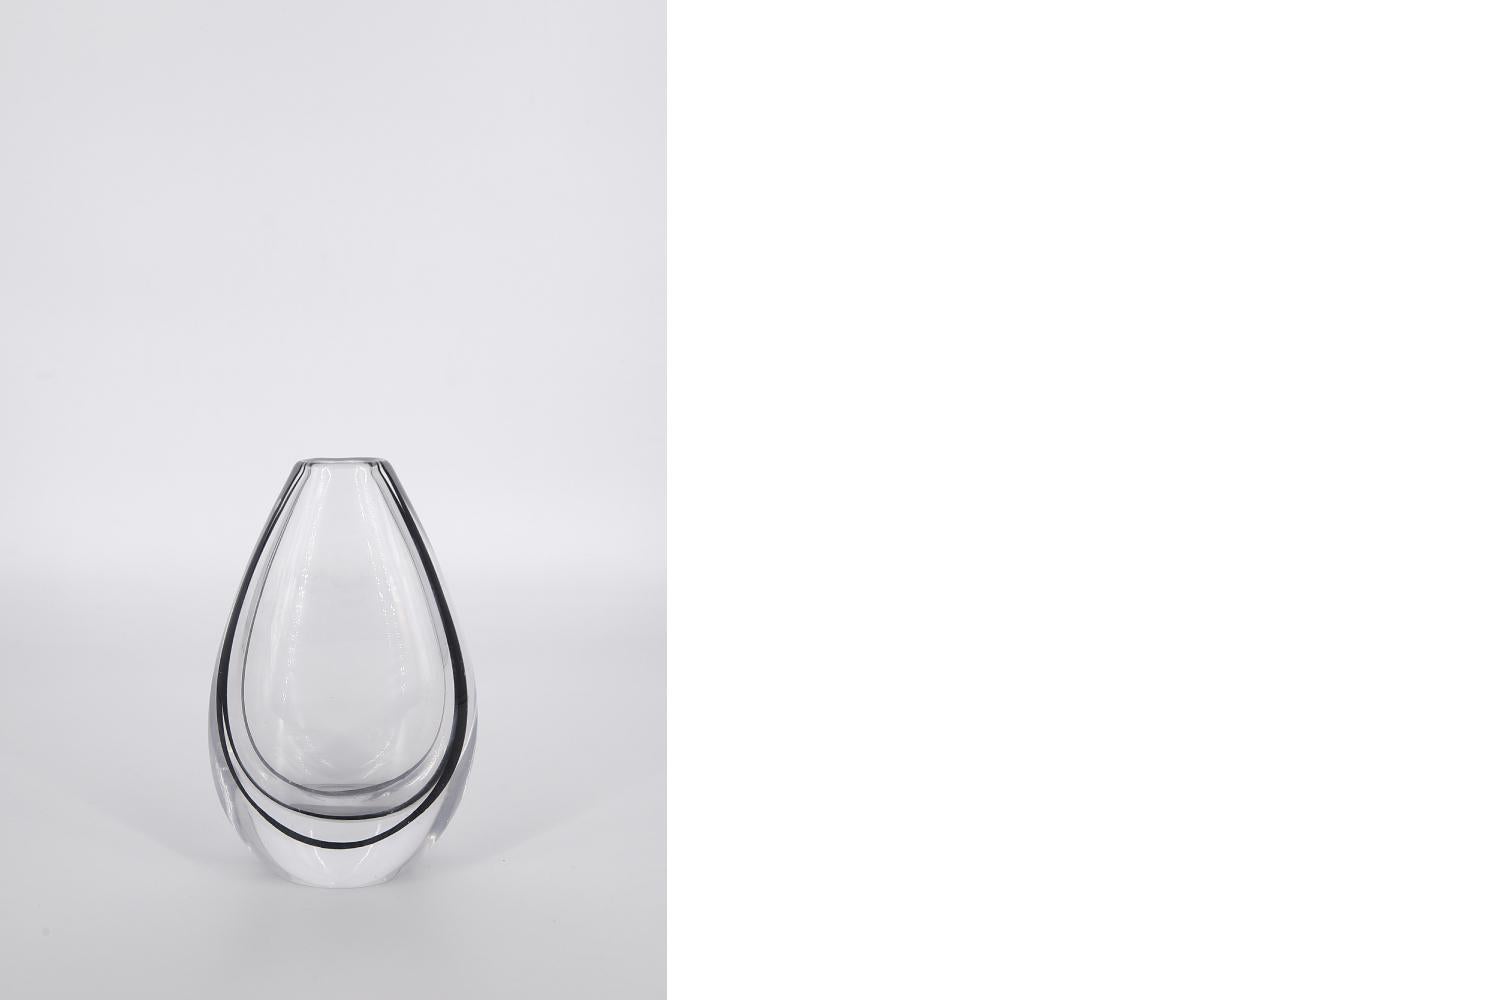 Diese Glasvase aus der Serie Contour wurde in den 1950er Jahren von Vicke Lindstrand für die schwedische Glashütte Kosta Glasbruk entworfen. Sie ist aus hochwertigem, klarem Kristallglas mit einer dunkelbraunen Linie im Inneren der Vase gefertigt.